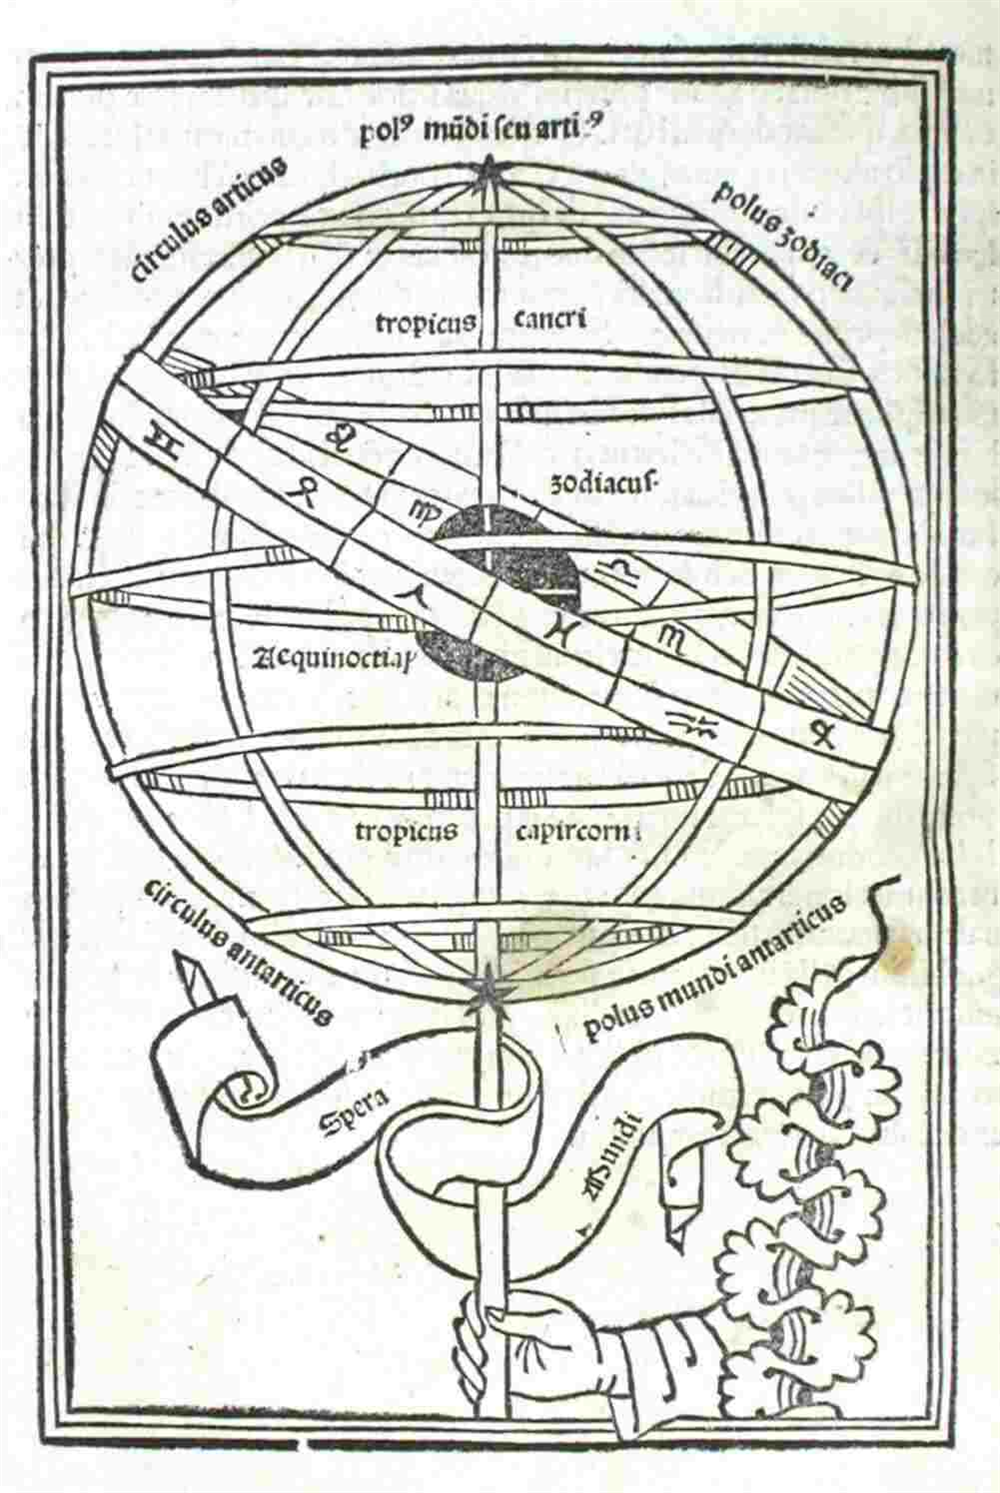 Hình 1: Các cung hoàng đạo. Hình minh họa này của Johannes de Sacrobosco’s De sphaera, in năm 1488, cho thấy vòng tròn của hoàng đạo và các dấu hiệu khác nhau của nó bao quanh một số đường vĩ độ phân định các vùng xích đạo, vùng nhiệt đới và vùng cực. Đối với các nhà khoa học - triết học thời Trung cổ, các đới khí hậu và các thiên thể là cơ sở để đưa ra các dự đoán khí tượng thiên văn. (Được phép của Bộ sưu tập Lịch sử Khoa học, Thư viện Đại học Oklahoma).